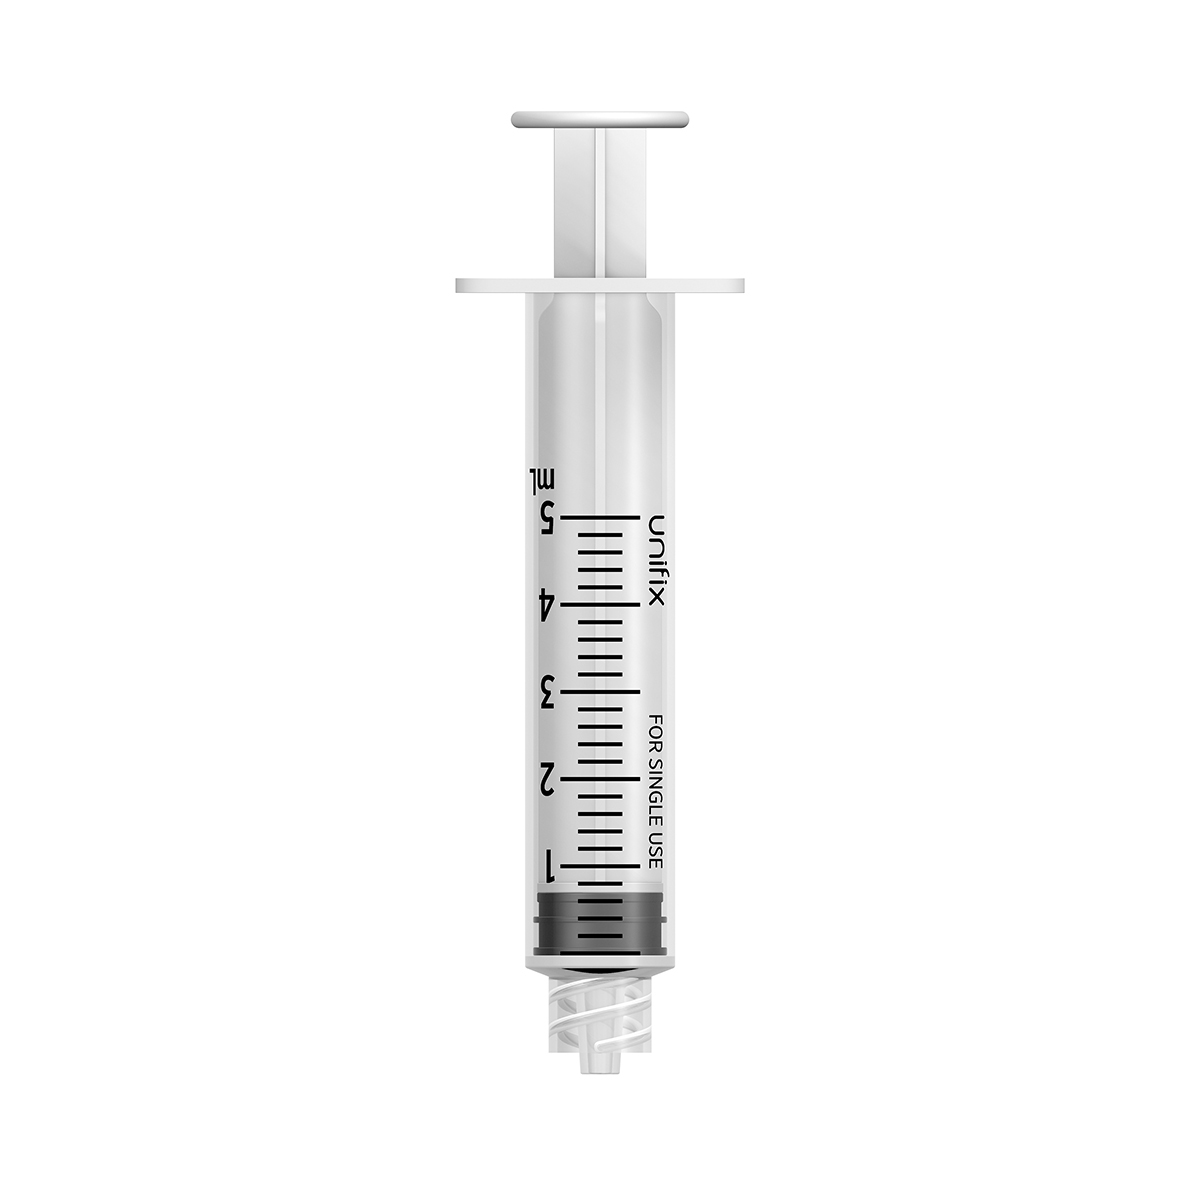 Unifix 5ml luer lock syringe